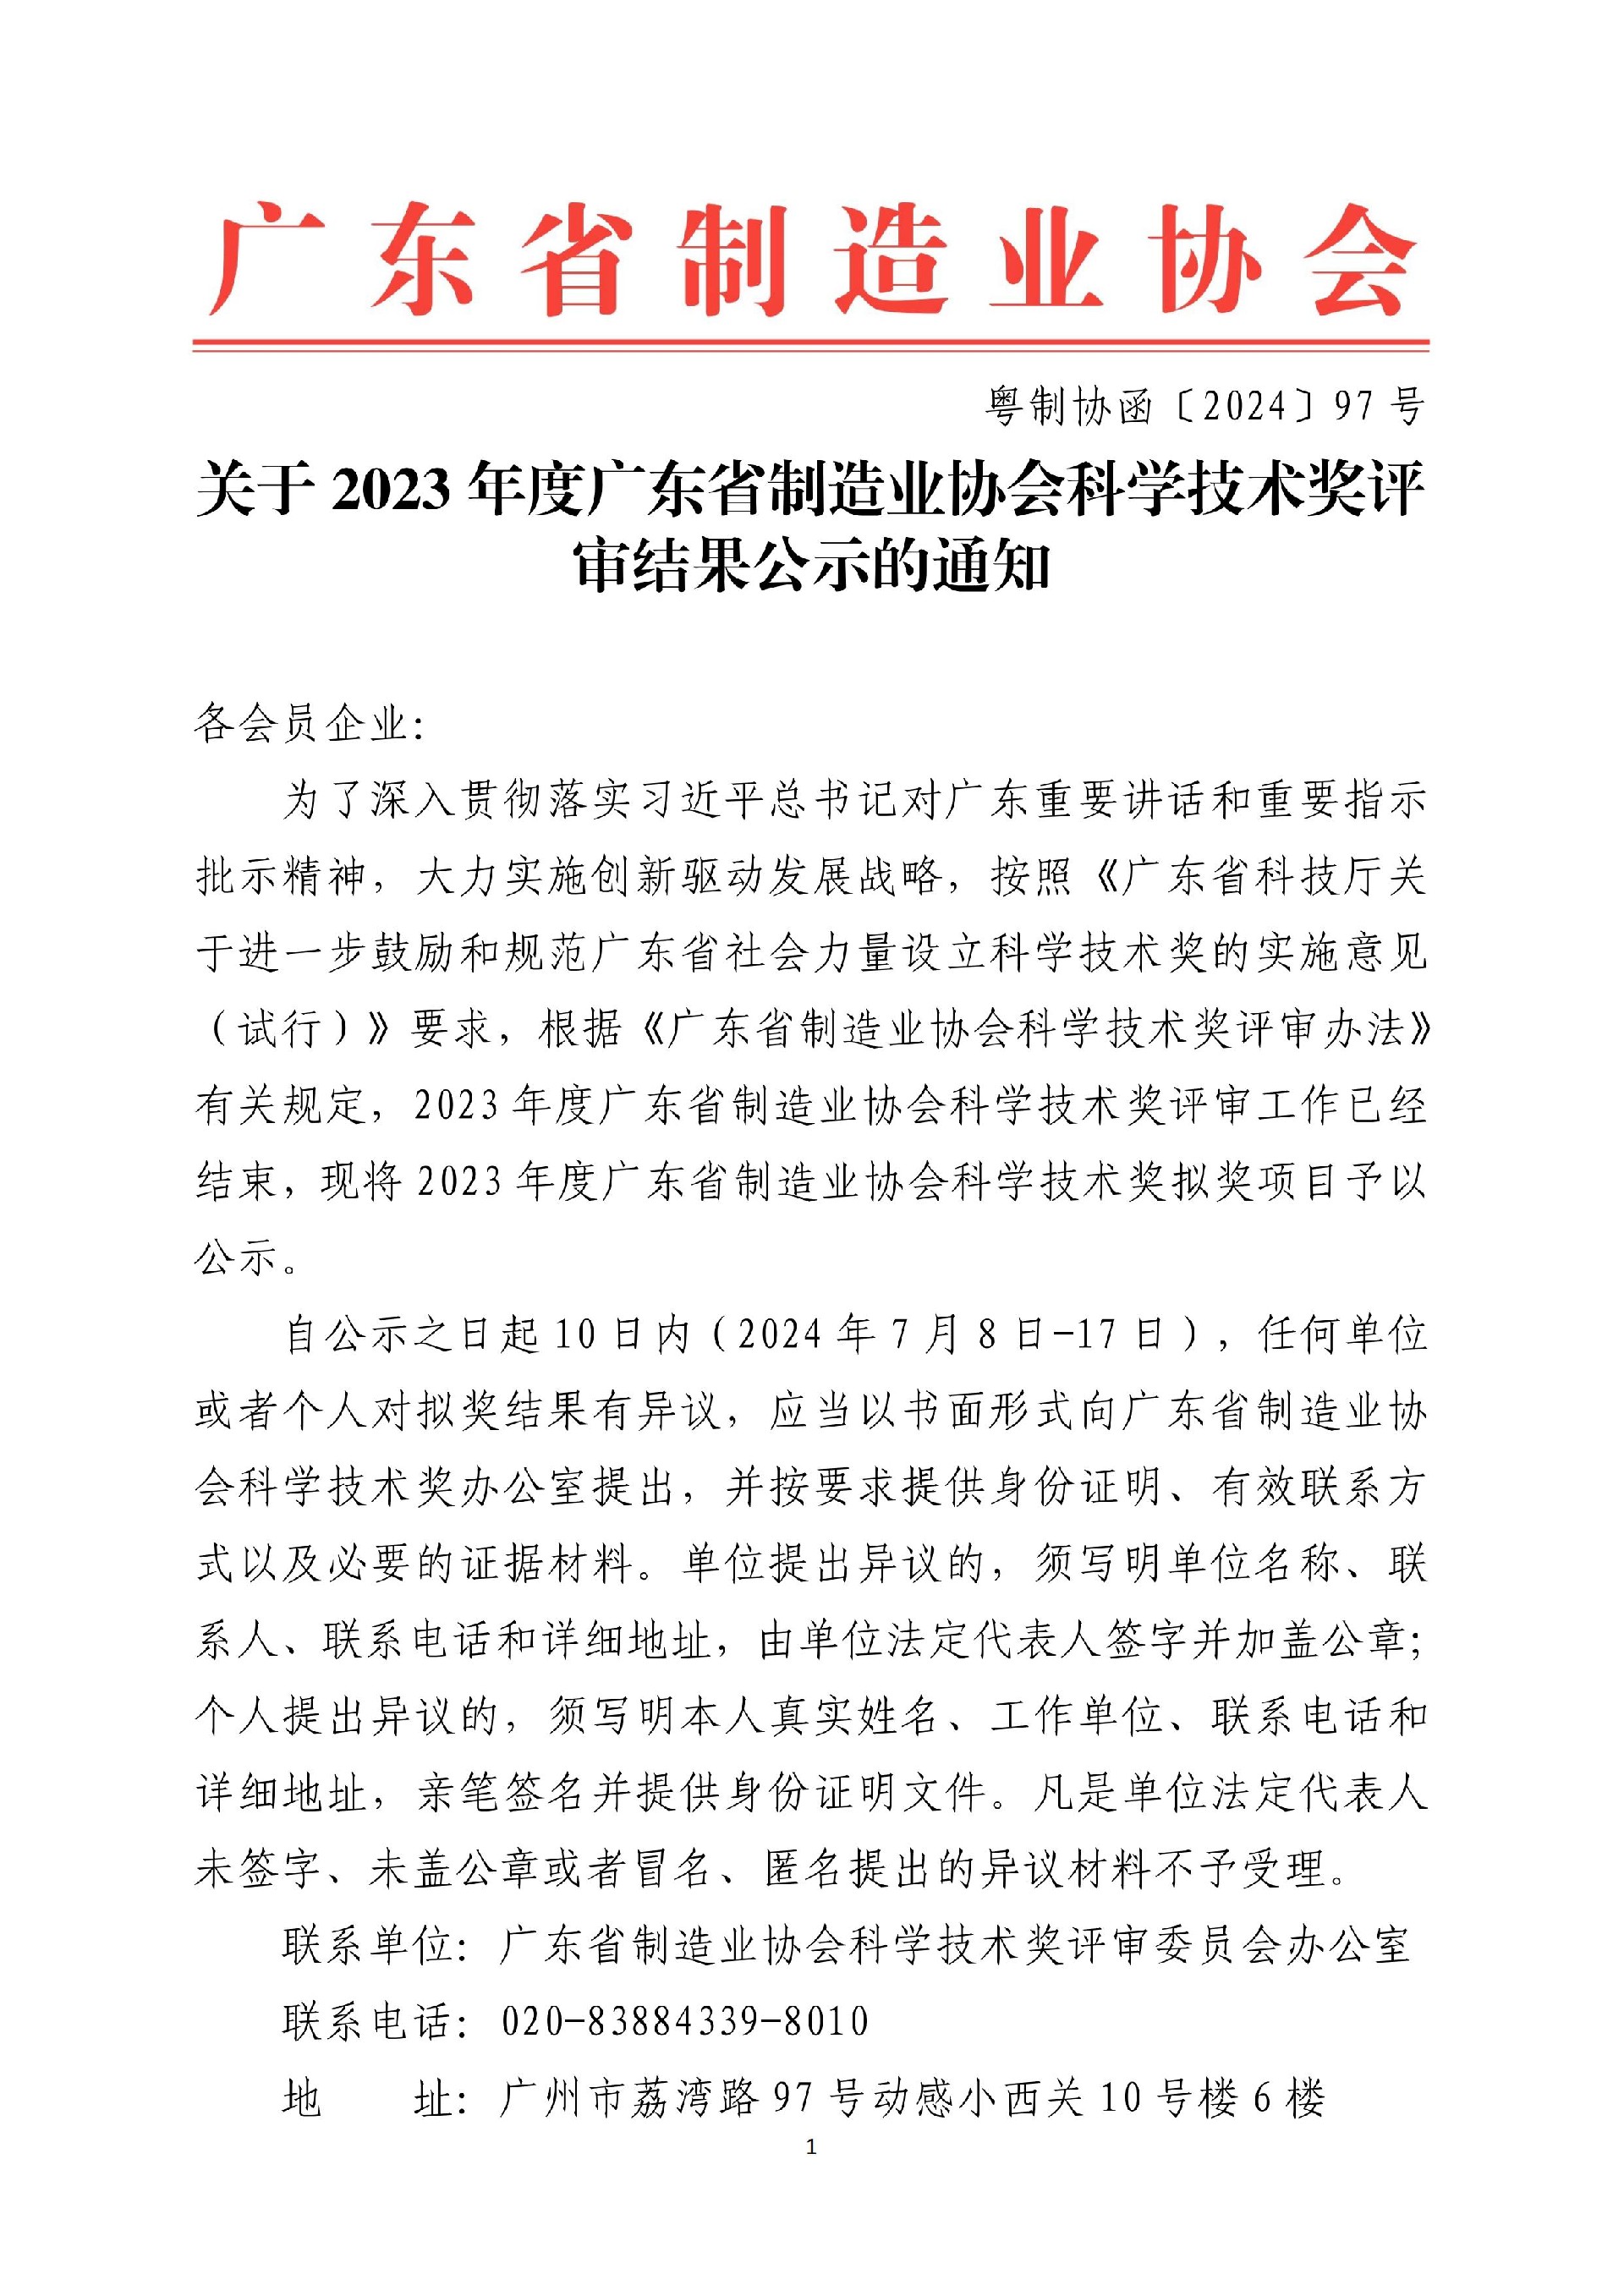 2023 年度广东省制造业协会学技术奖评审结果公示（公示期已结束）